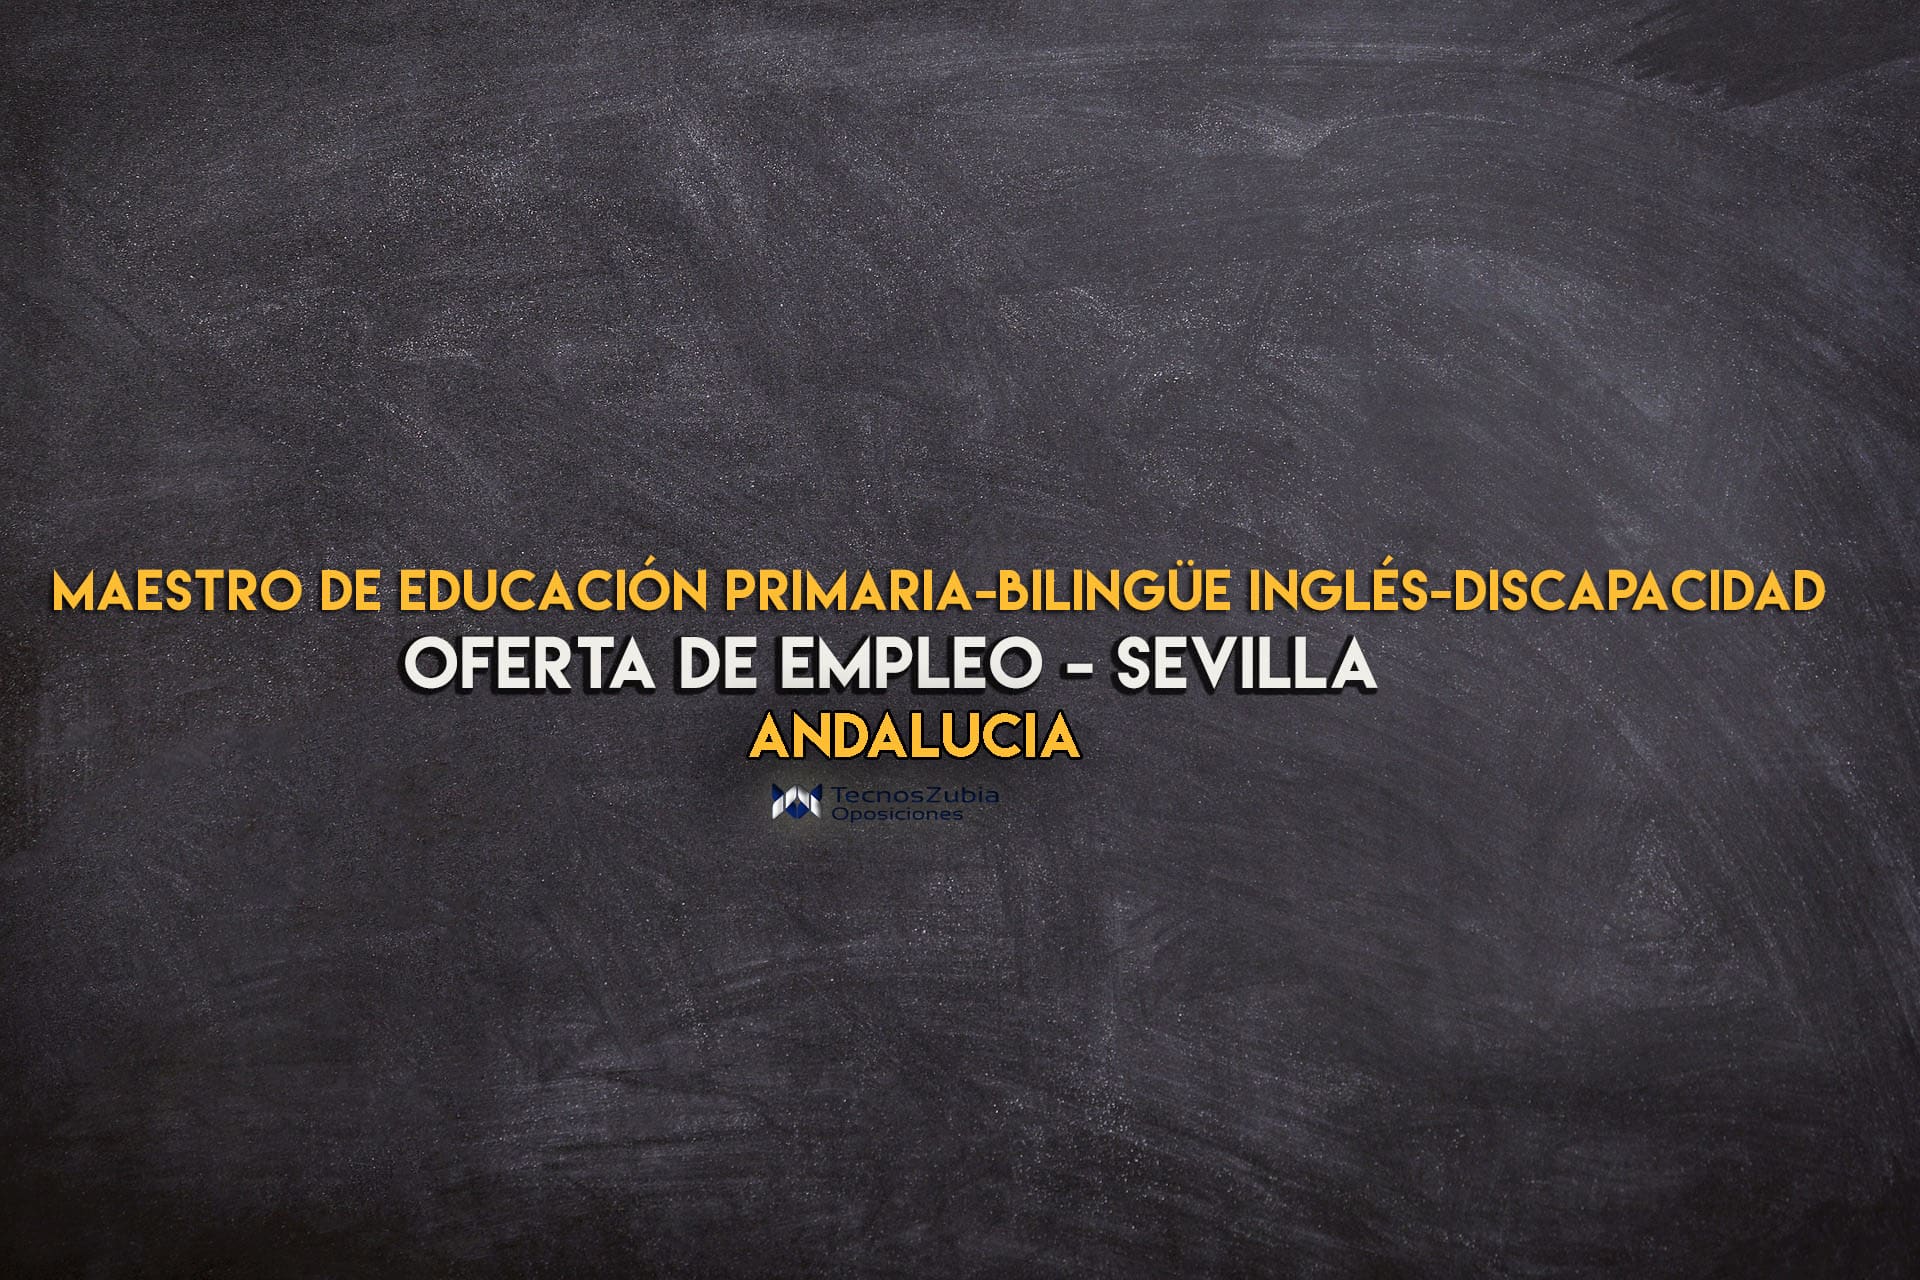 Oferta de empleo. Maestro de educación primaria-bilingüe inglés-discapacidad. Sevilla.